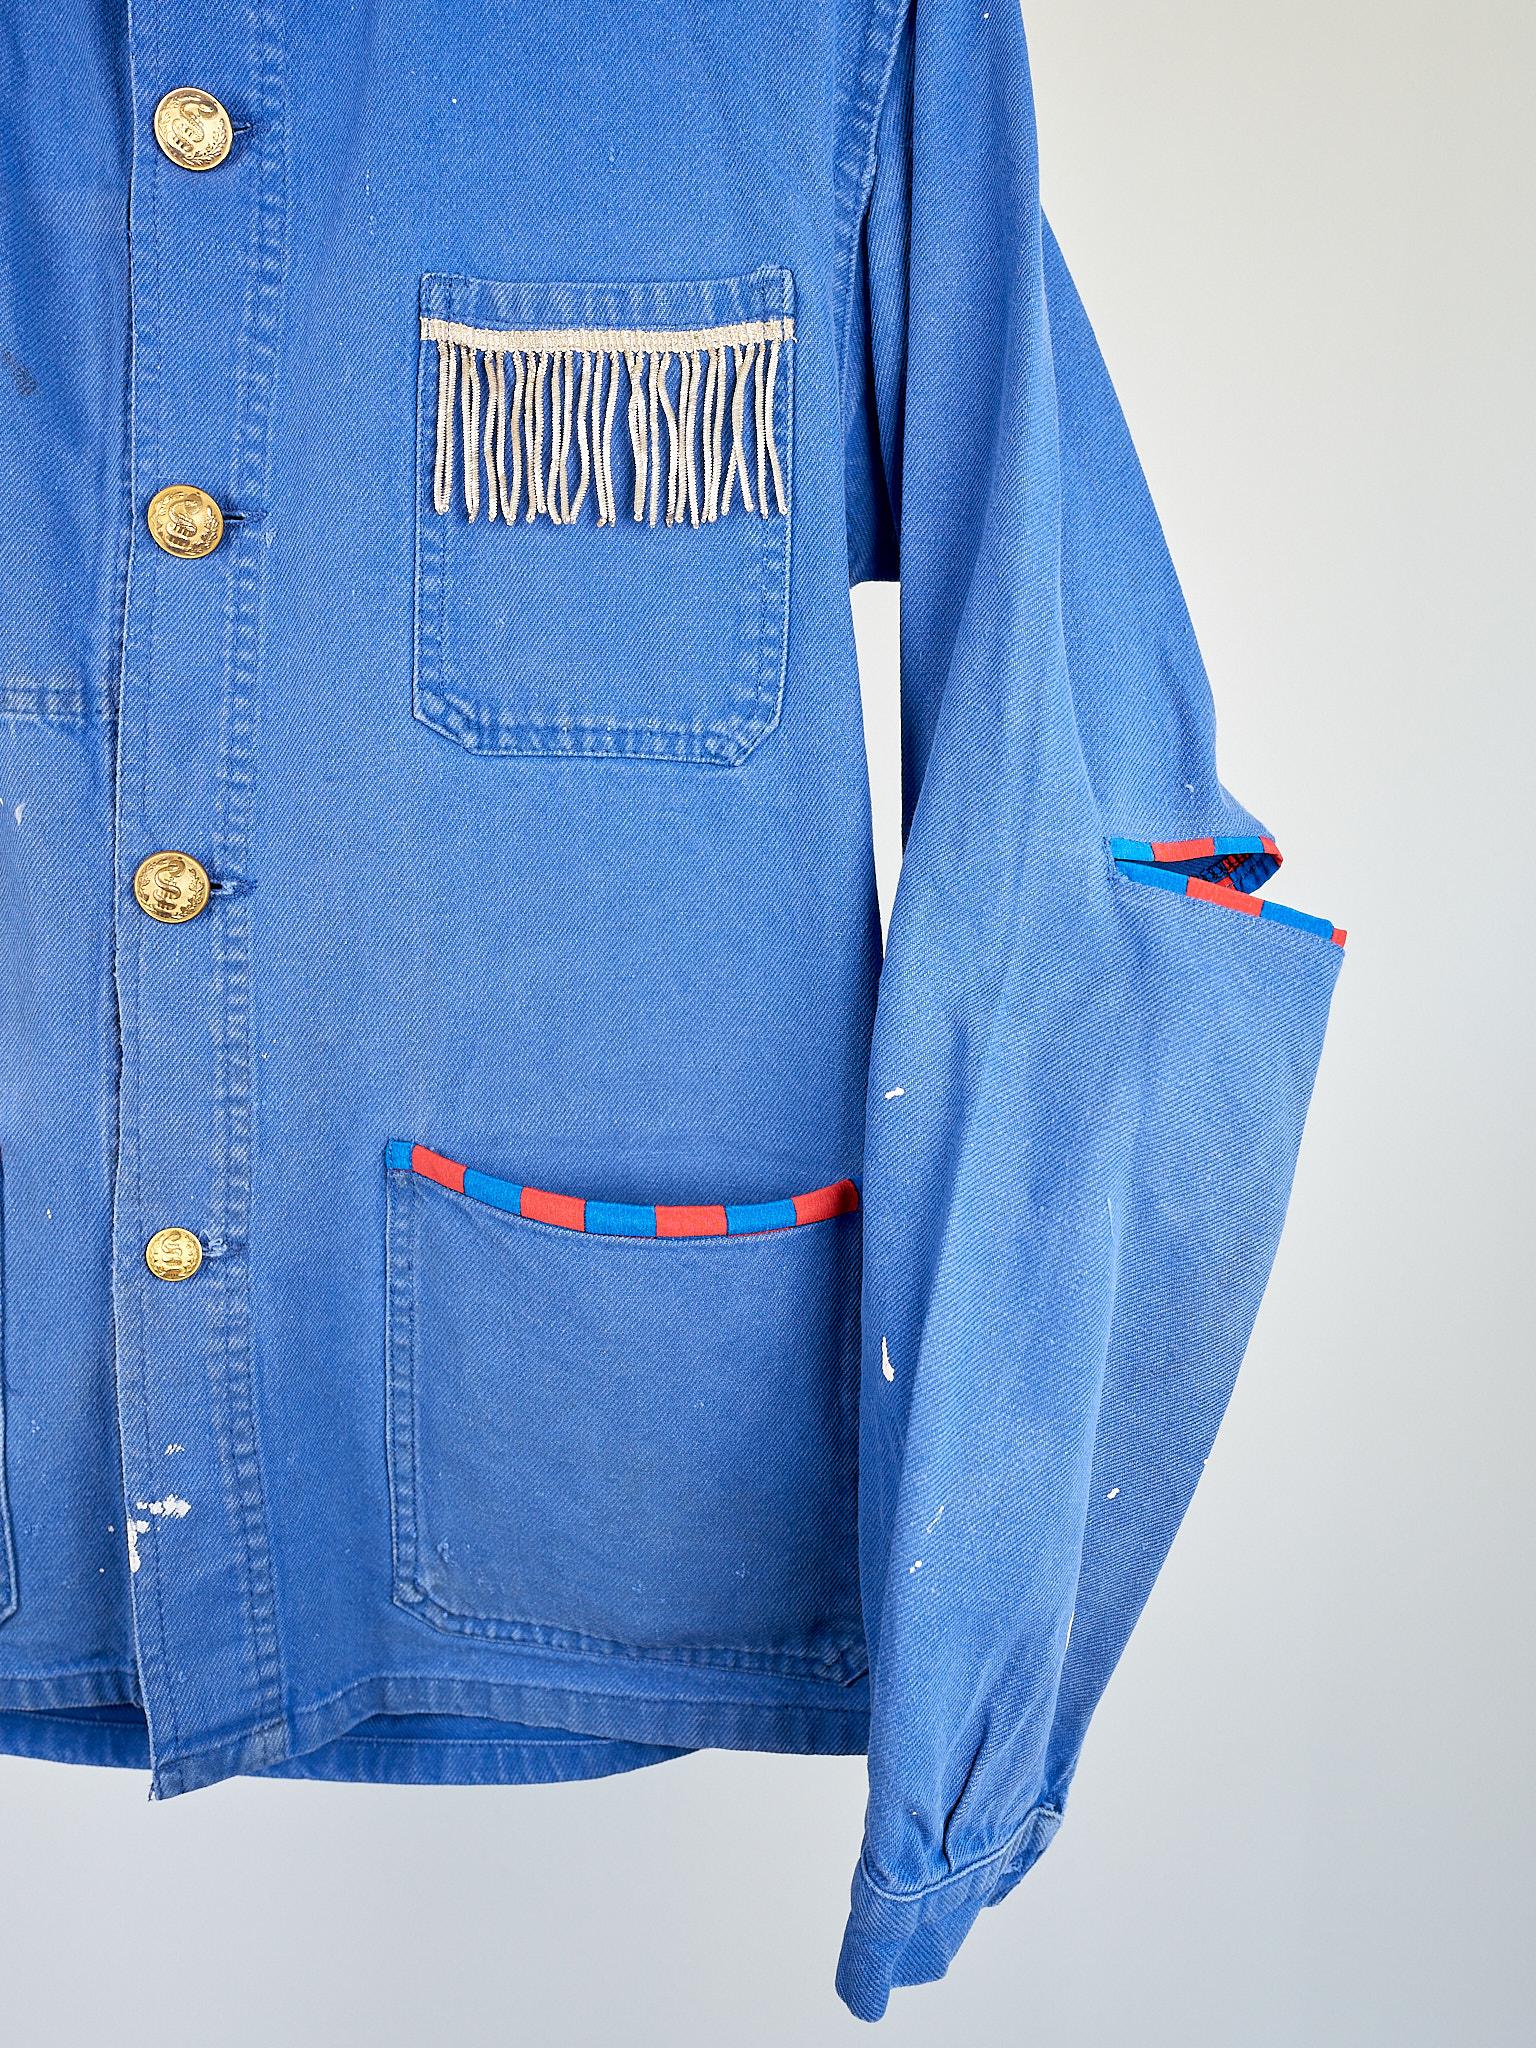 Women's Blue Work Wear Jacket Vintage Silver Bullion Fringes Italian Silk